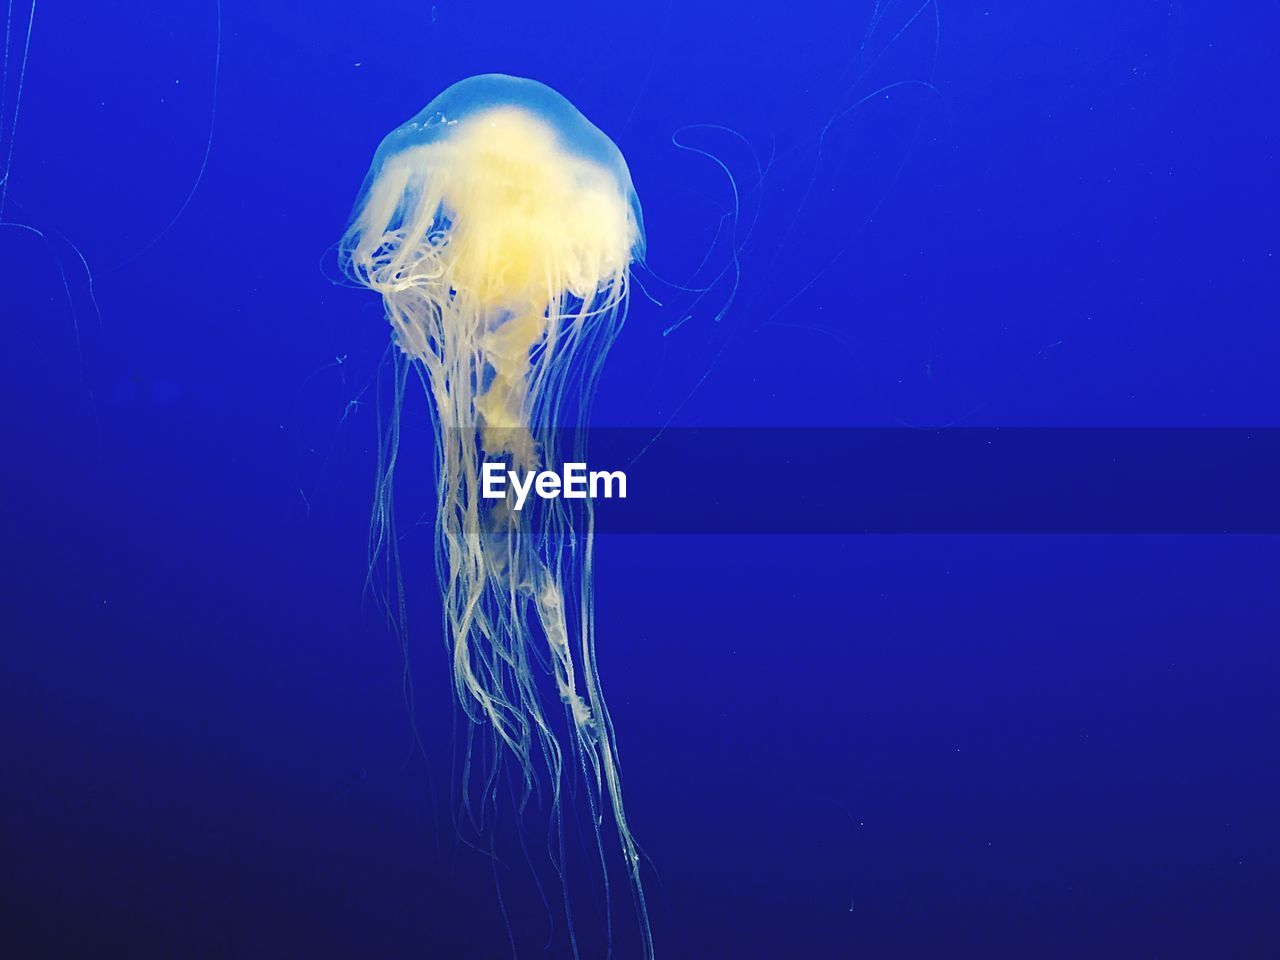 Jellyfish swimming in fish tank at monterey bay aquarium